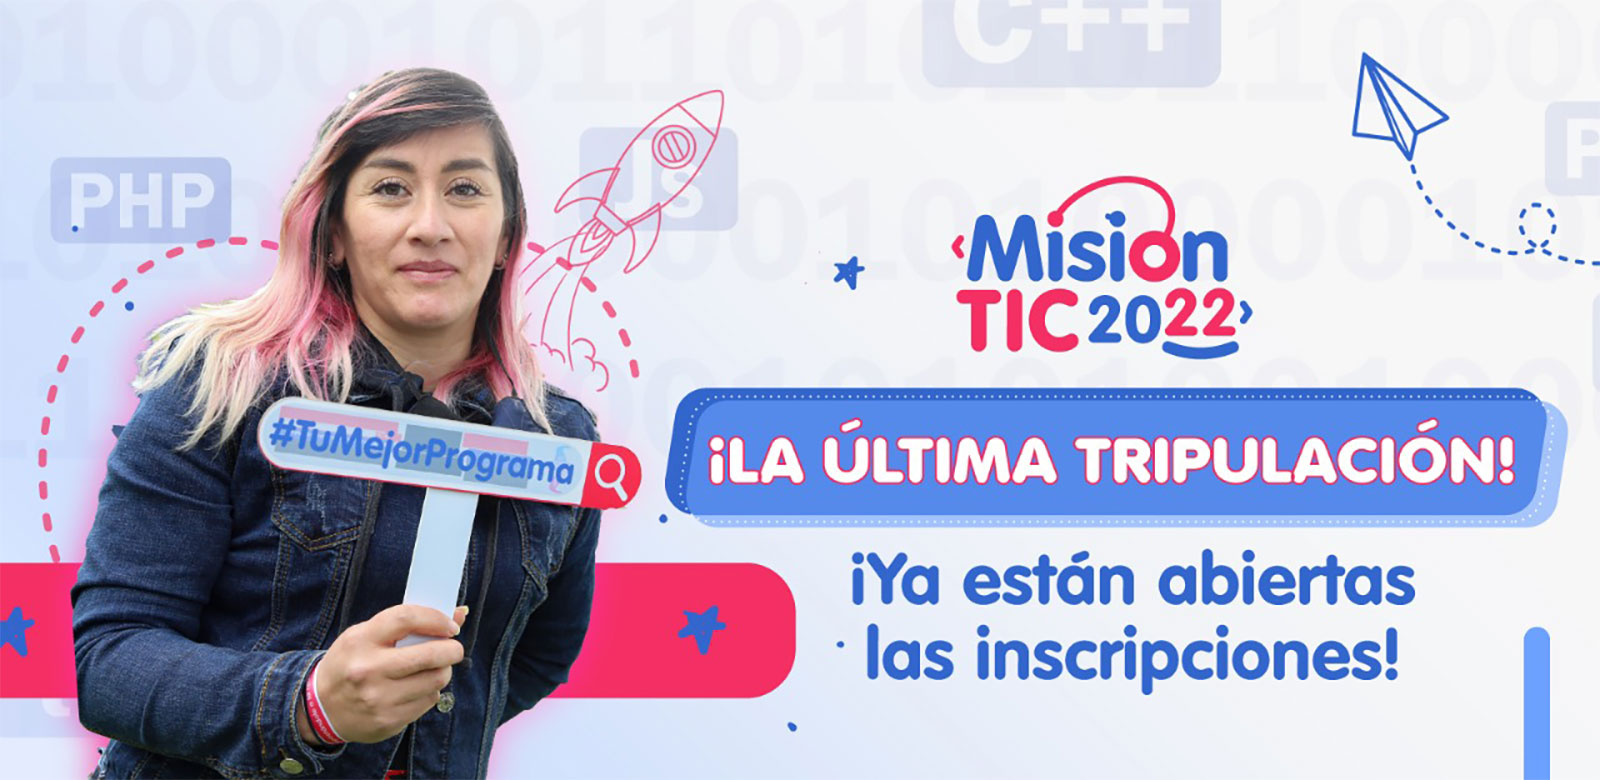 Imagen Misión TIC 2022, convocatoria para 50 mil colombianos que quieran formarse en programación